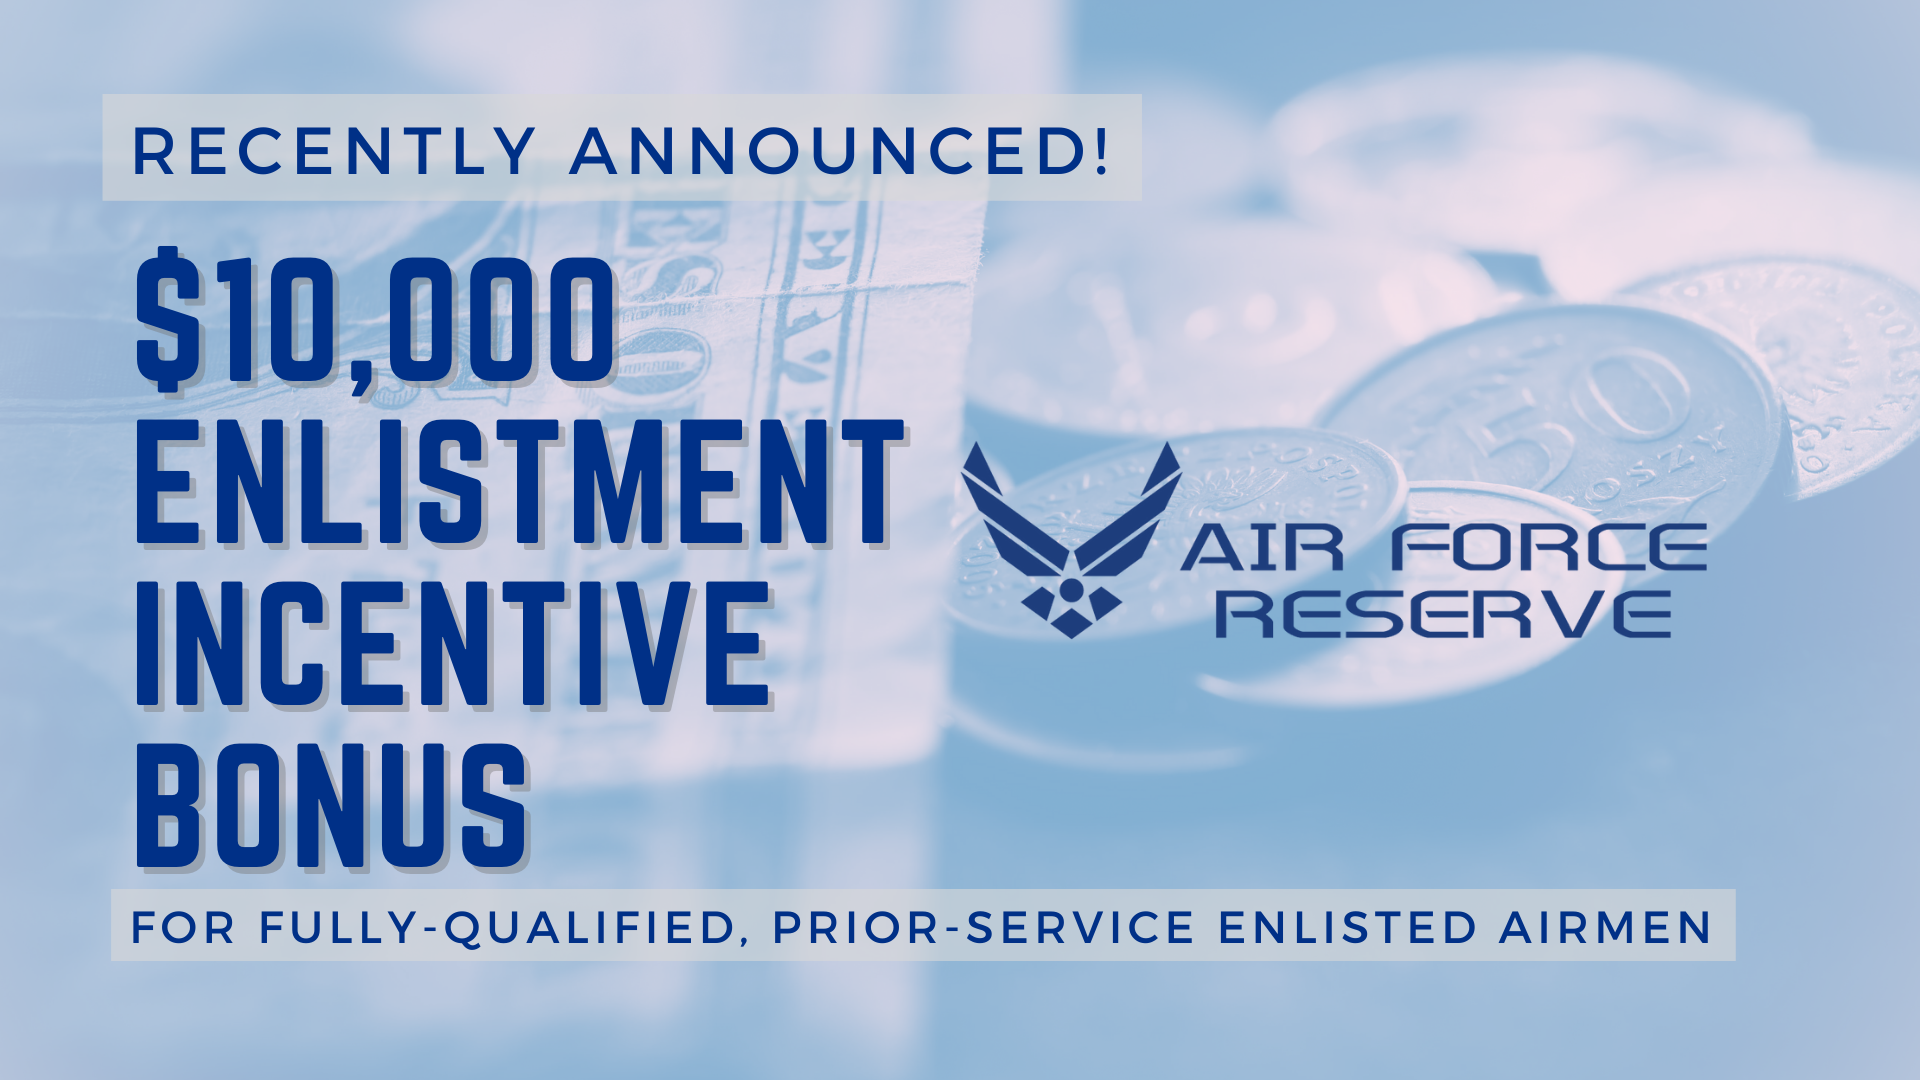 Air Force Reserve announces 10,000 enlistment incentive bonus